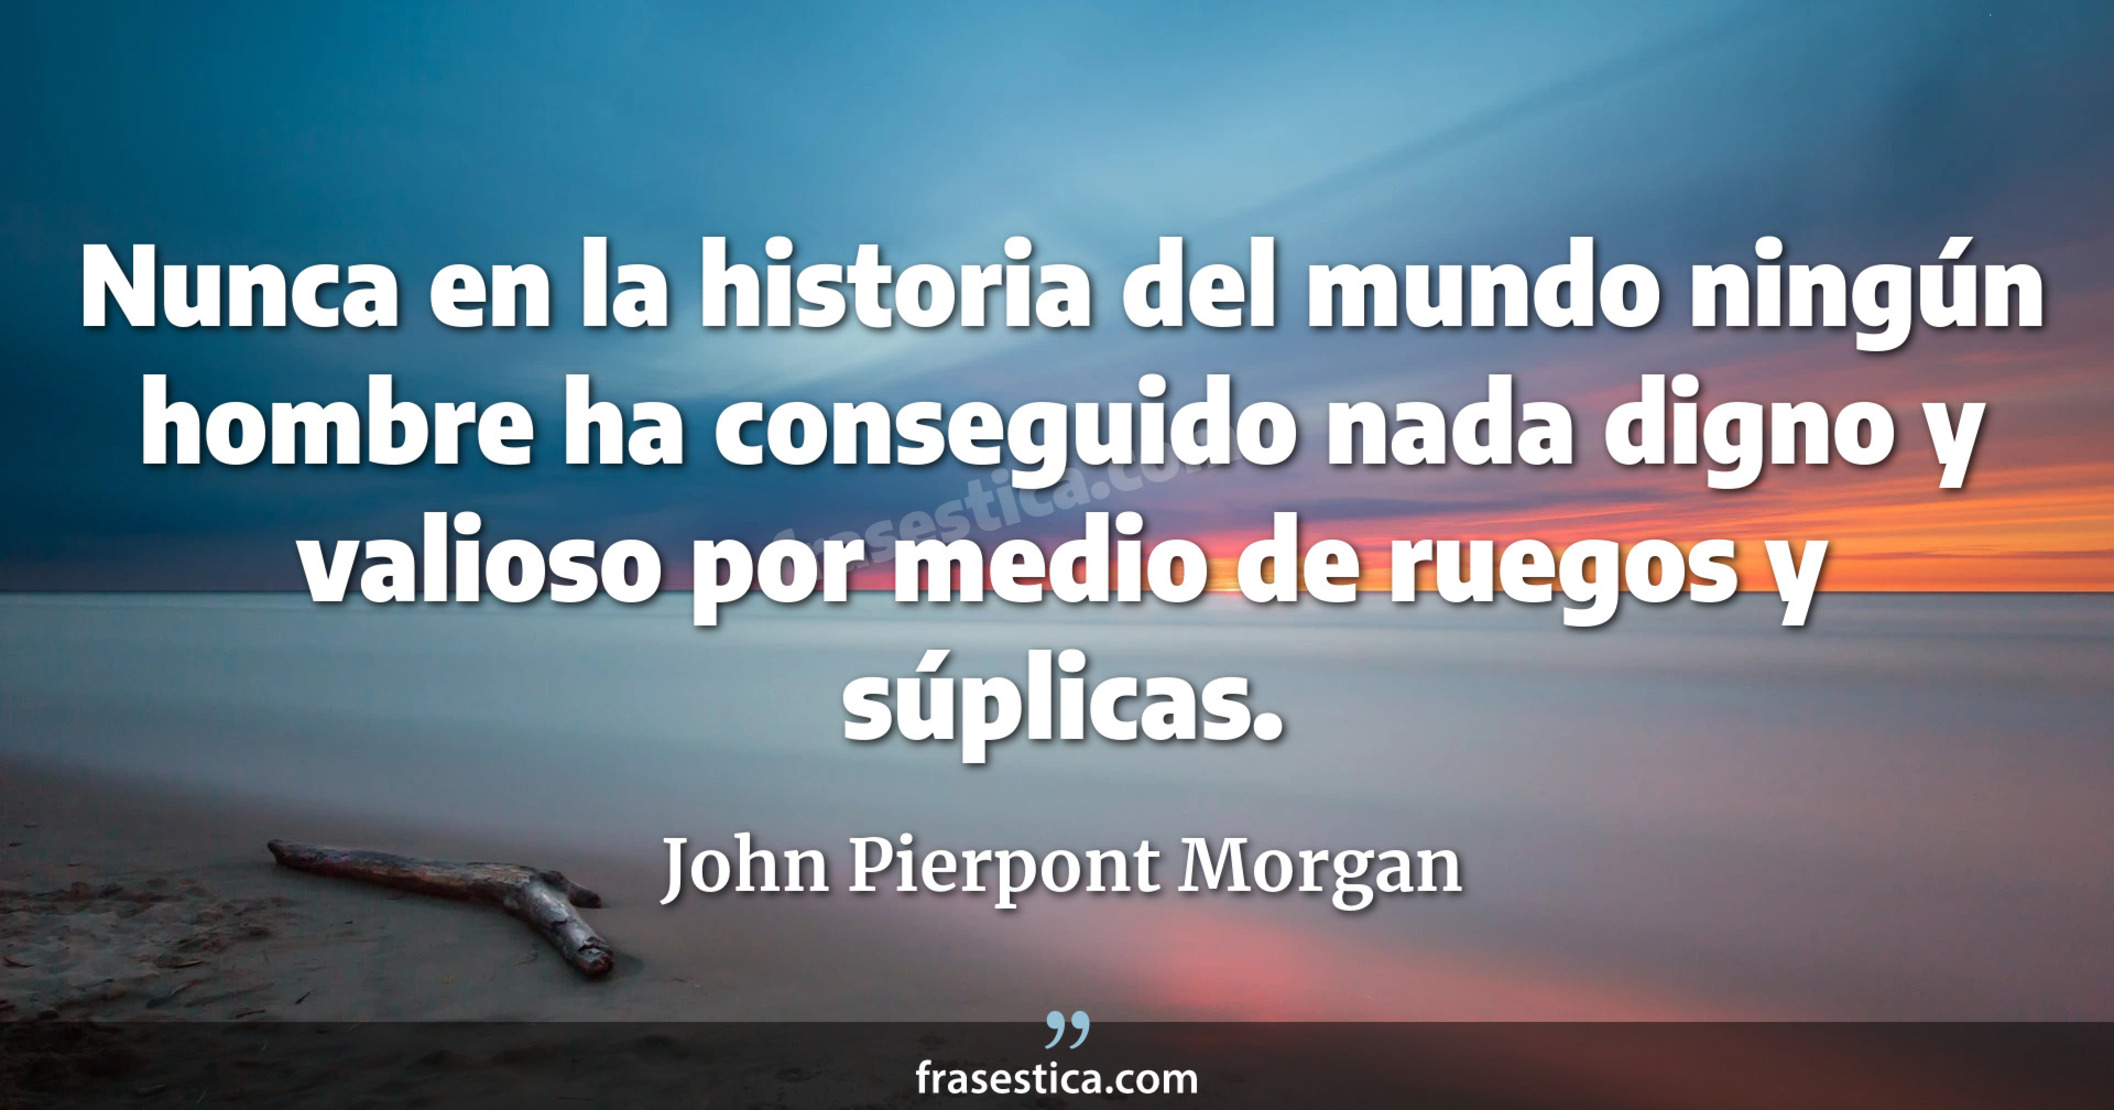 Nunca en la historia del mundo ningún hombre ha conseguido nada digno y valioso por medio de ruegos y súplicas. - John Pierpont Morgan